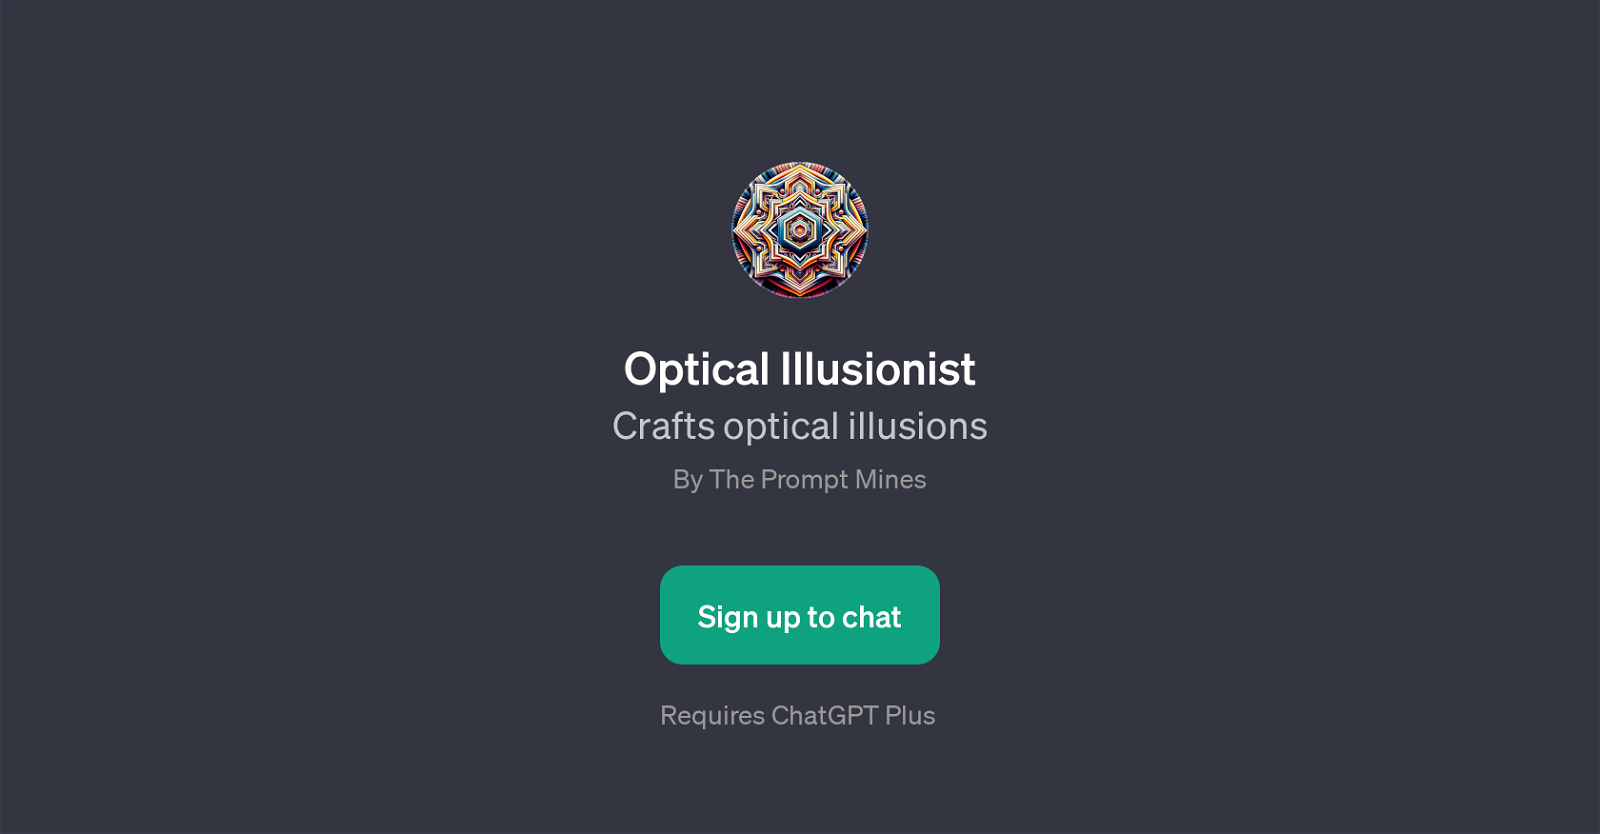 Optical Illusionist website